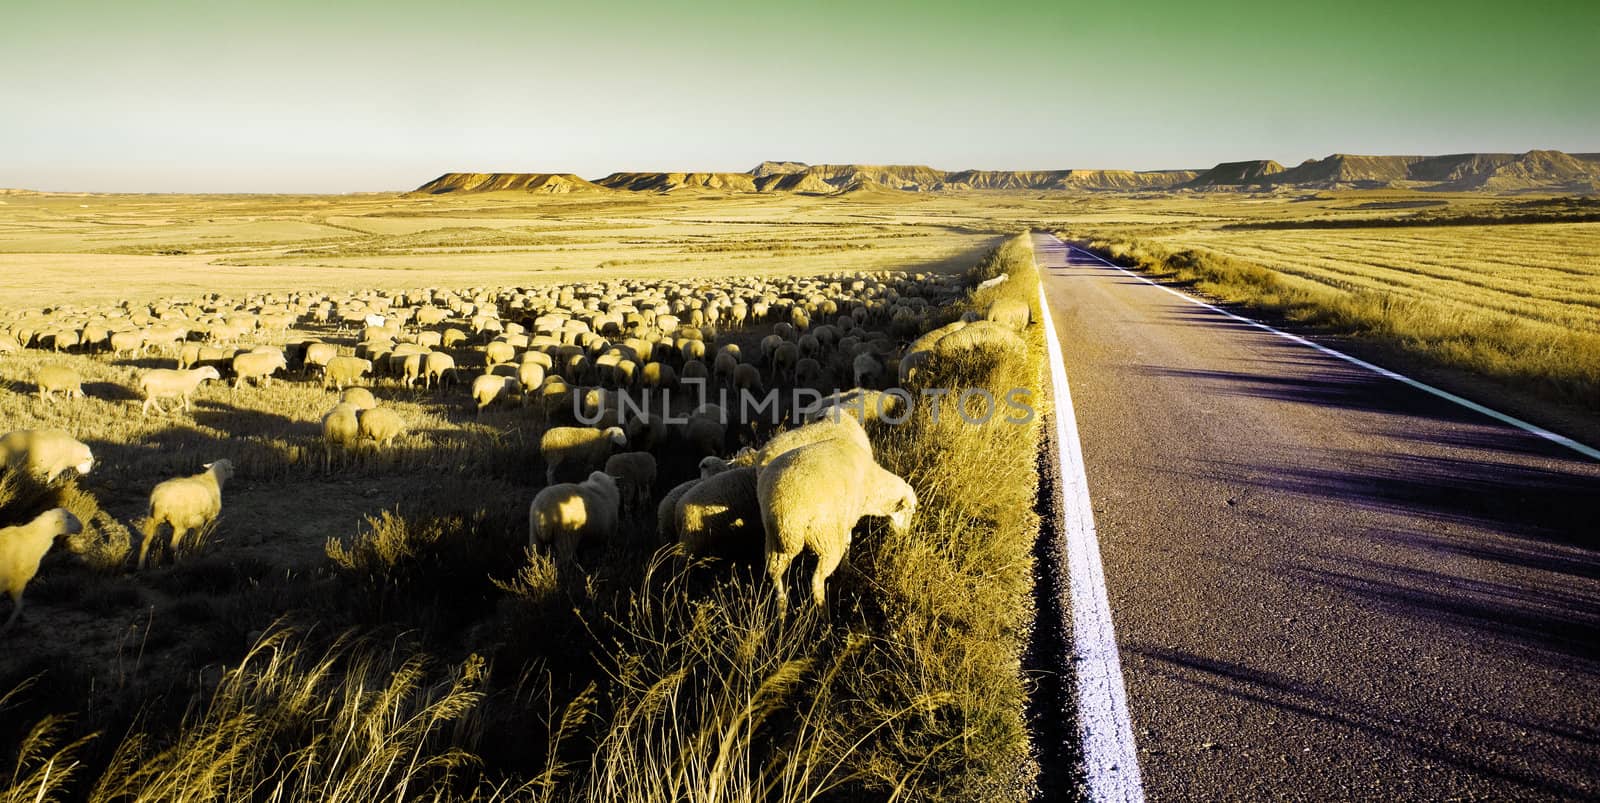 Flock of sheep by carloscastilla